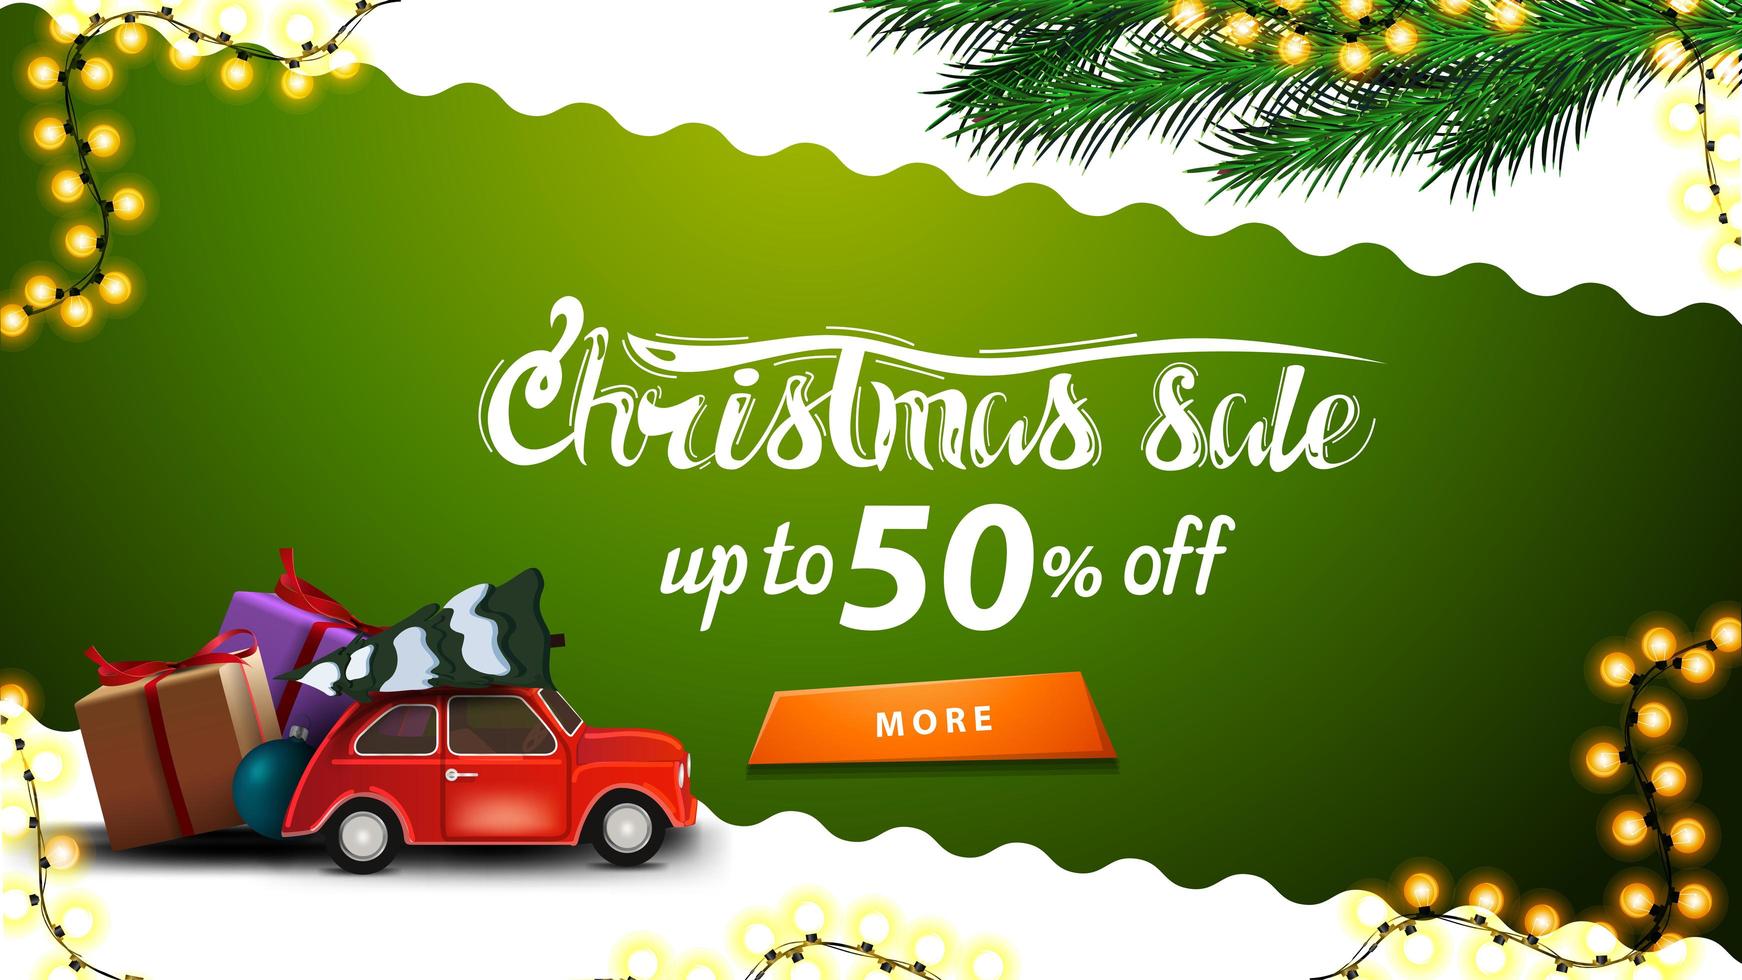 vente de Noël, jusqu'à 50 de réduction, bannière de réduction verte et blanche avec ligne diagonale ondulée, bouton orange, branches d'arbre de Noël et voiture vintage rouge portant arbre de Noël vecteur